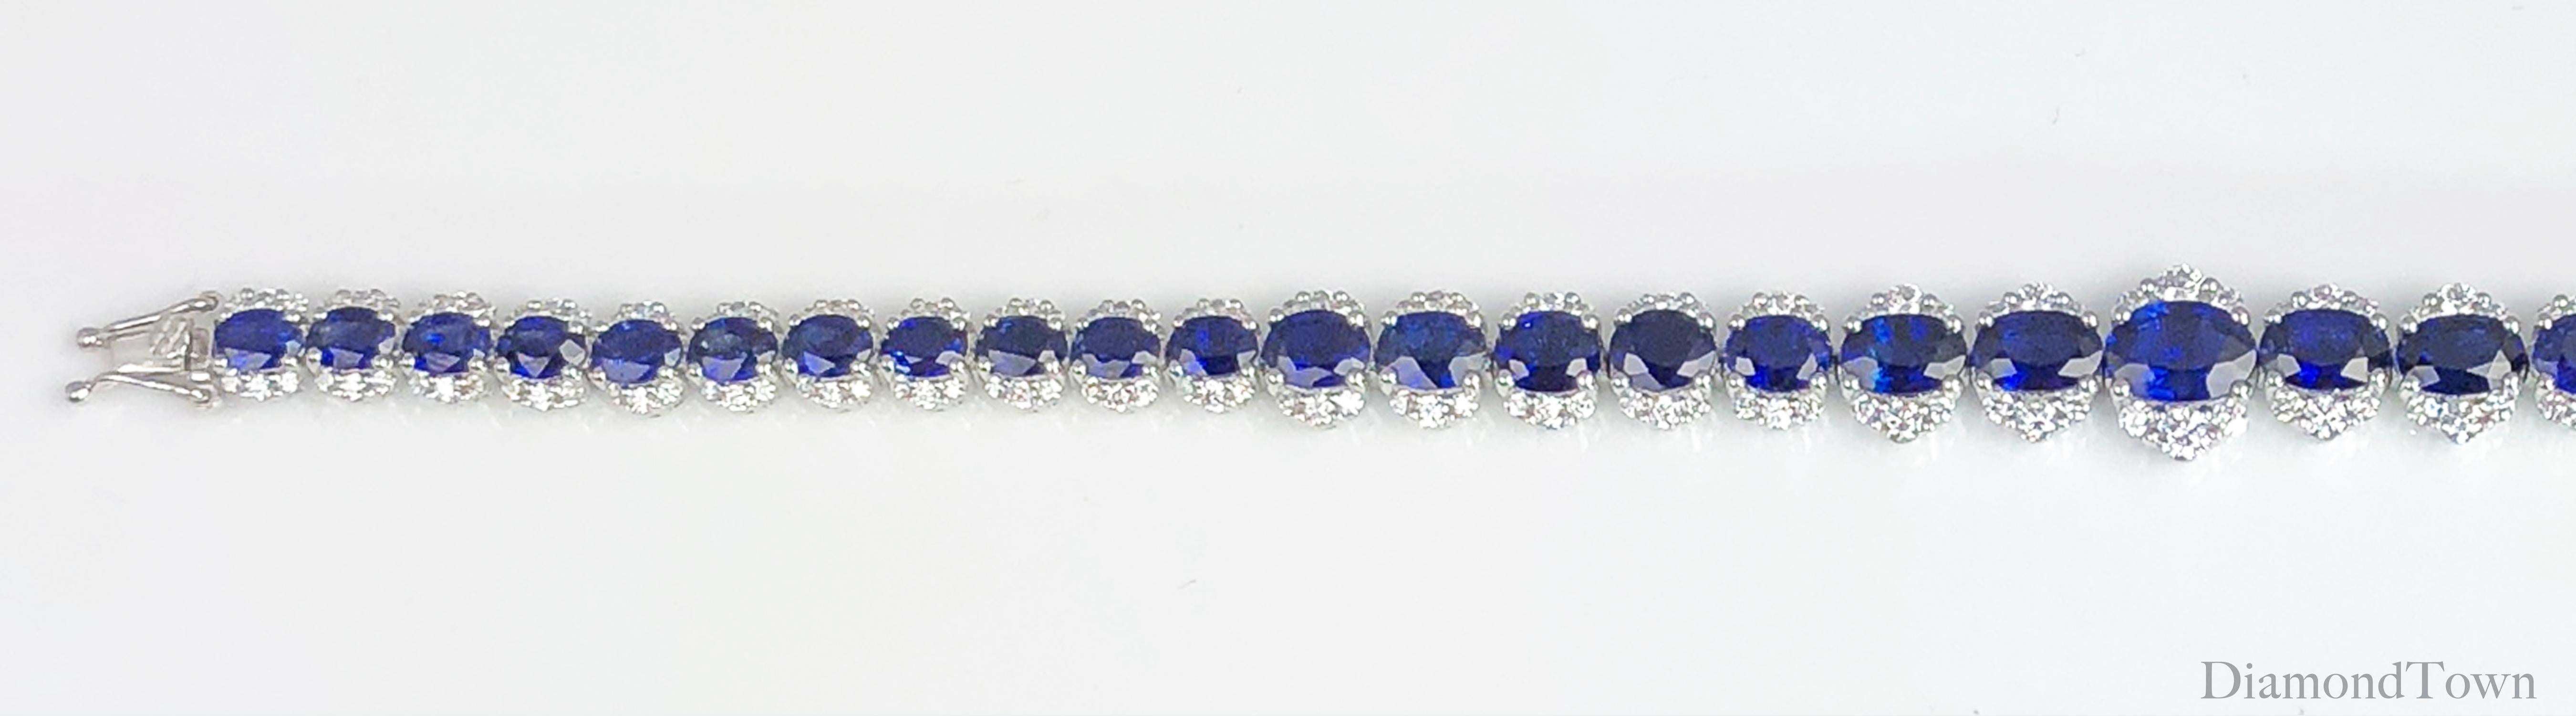 Contemporary DiamondTown 11.93 Carat Vivid Blue Sapphire and Diamond Bracelet